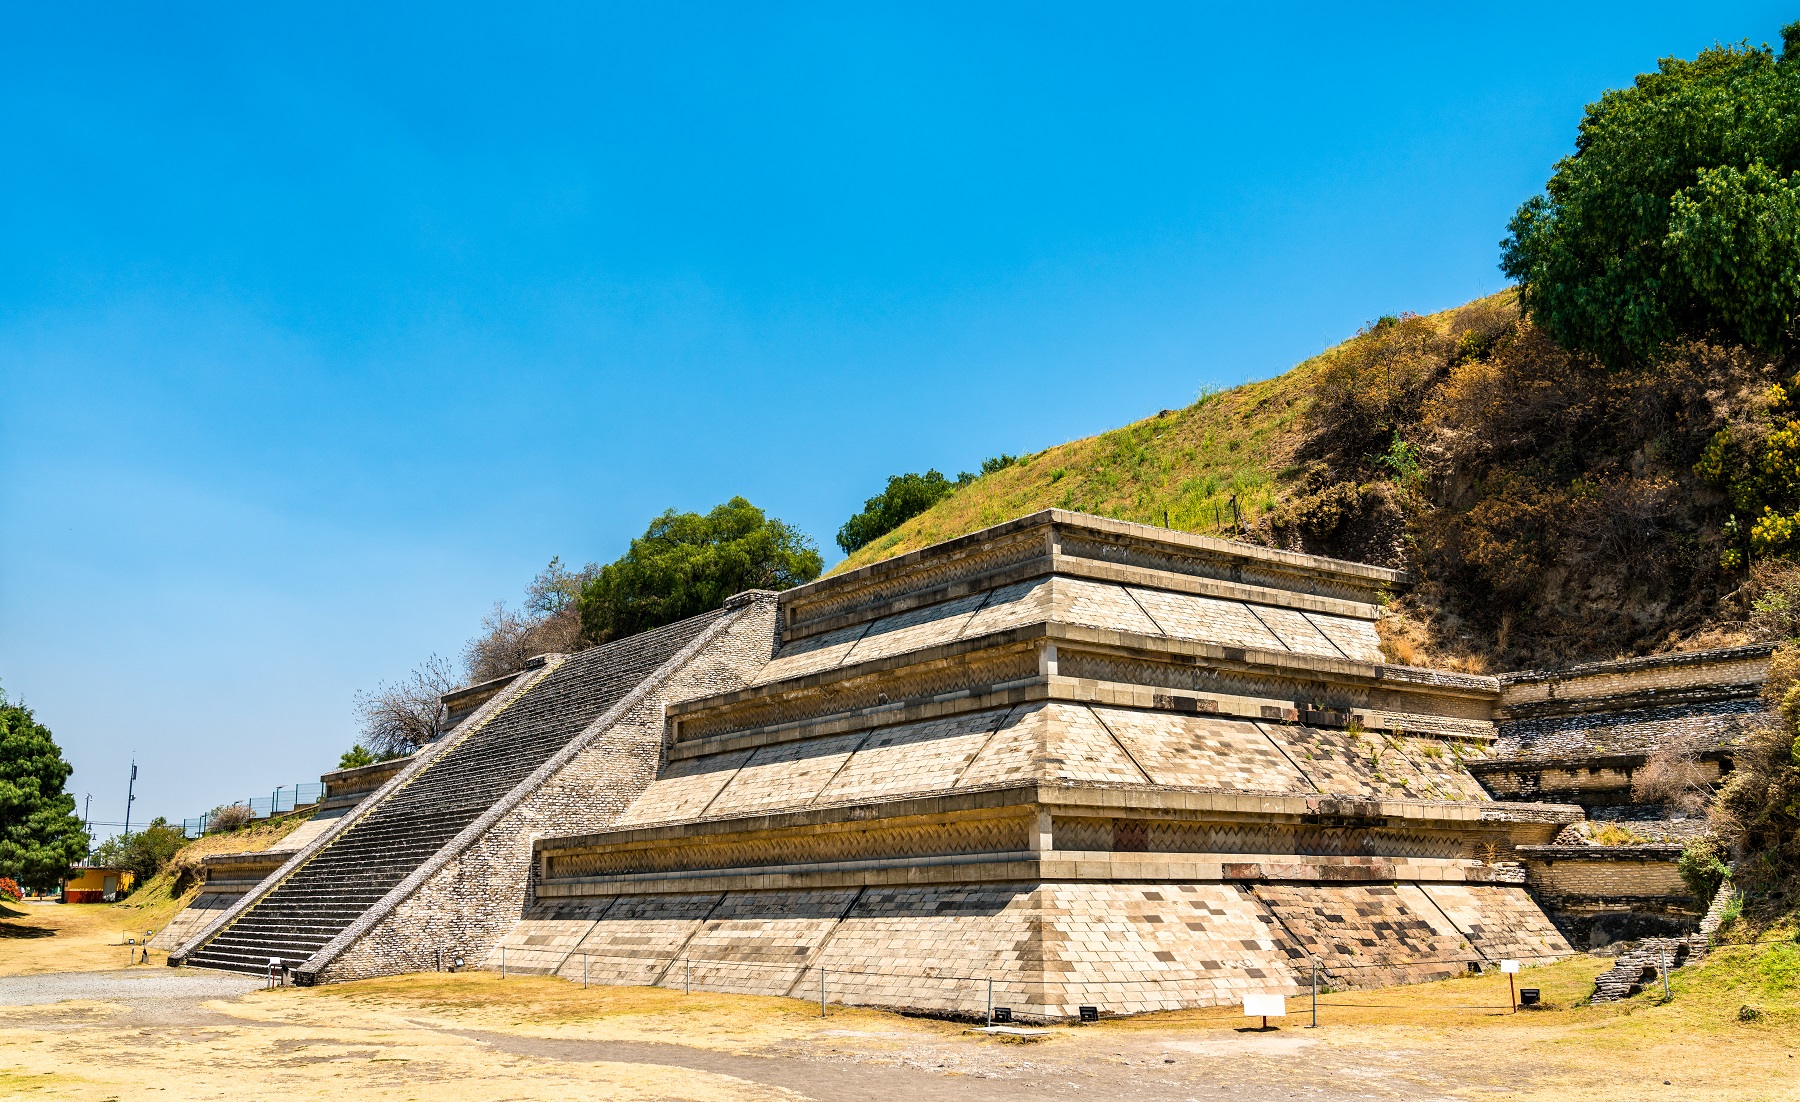 هرم خولولا الكبير Great Pyramid of Cholula (1,8 مليون متر مكعب)، ولاية بويبلا، المكسيك